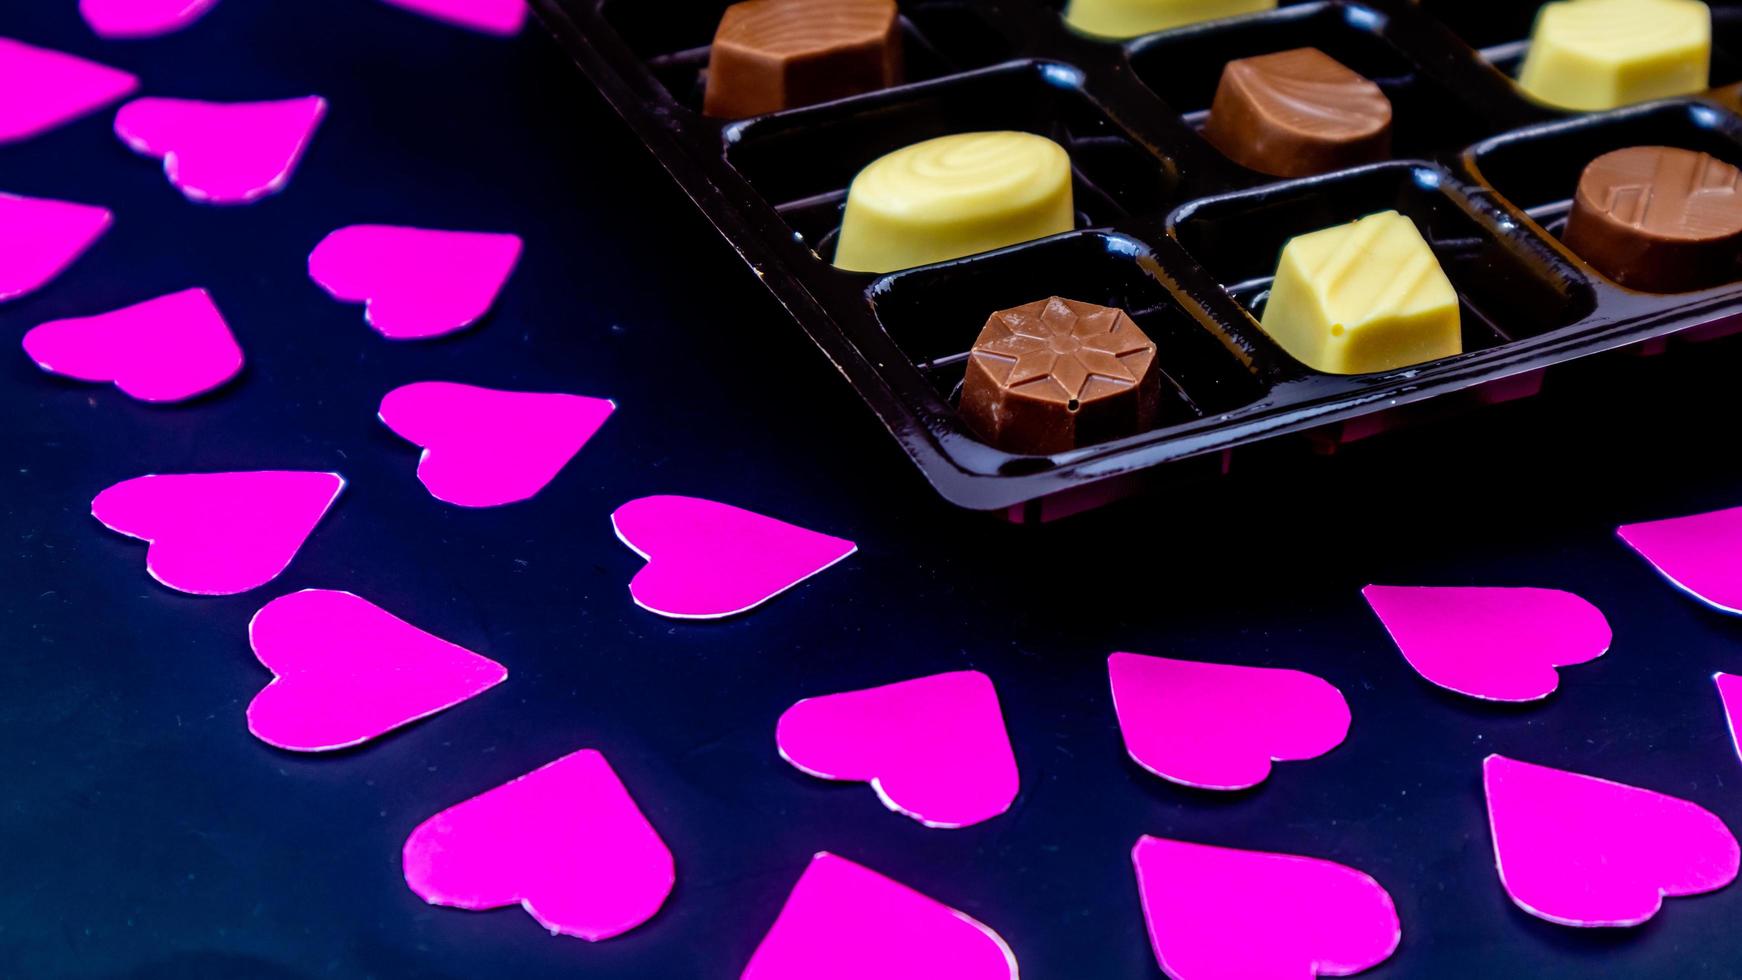 delicioso chocolate rodeado de corazones rosas sobre fondo negro foto